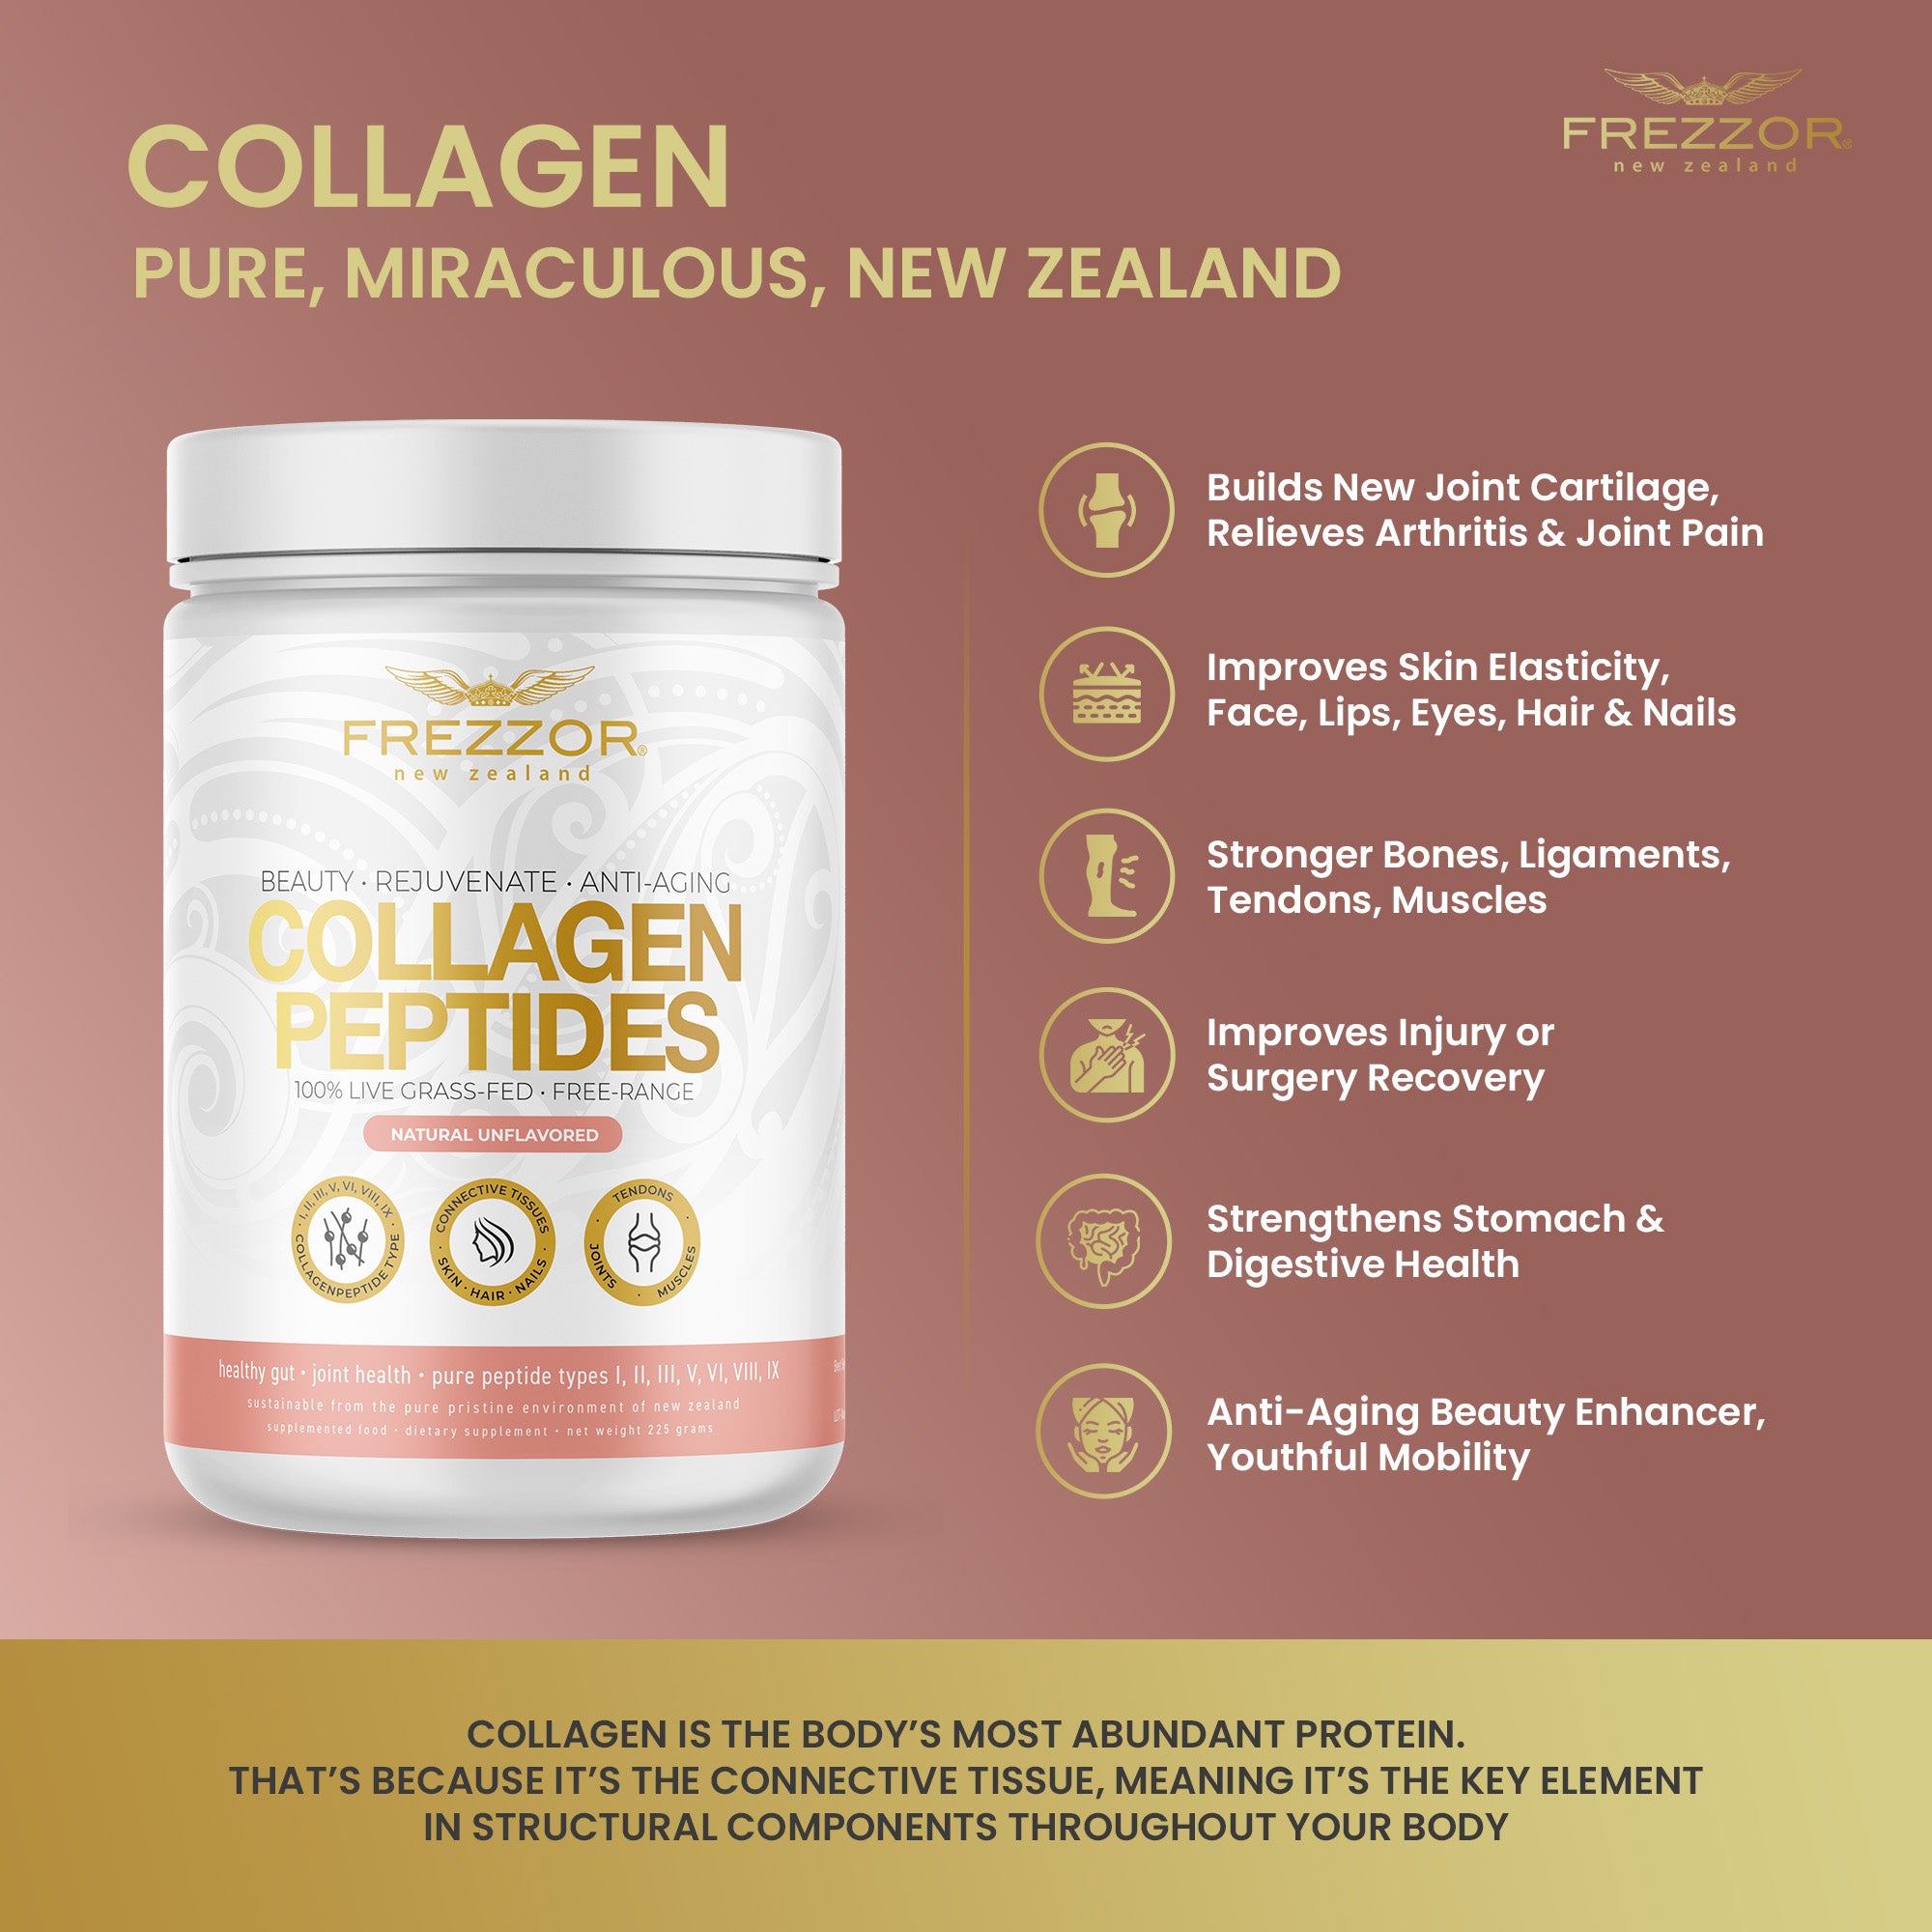 Collagen Peptides Powder  FREZZOR Grass-fed collagen peptides powder from New Zealand 